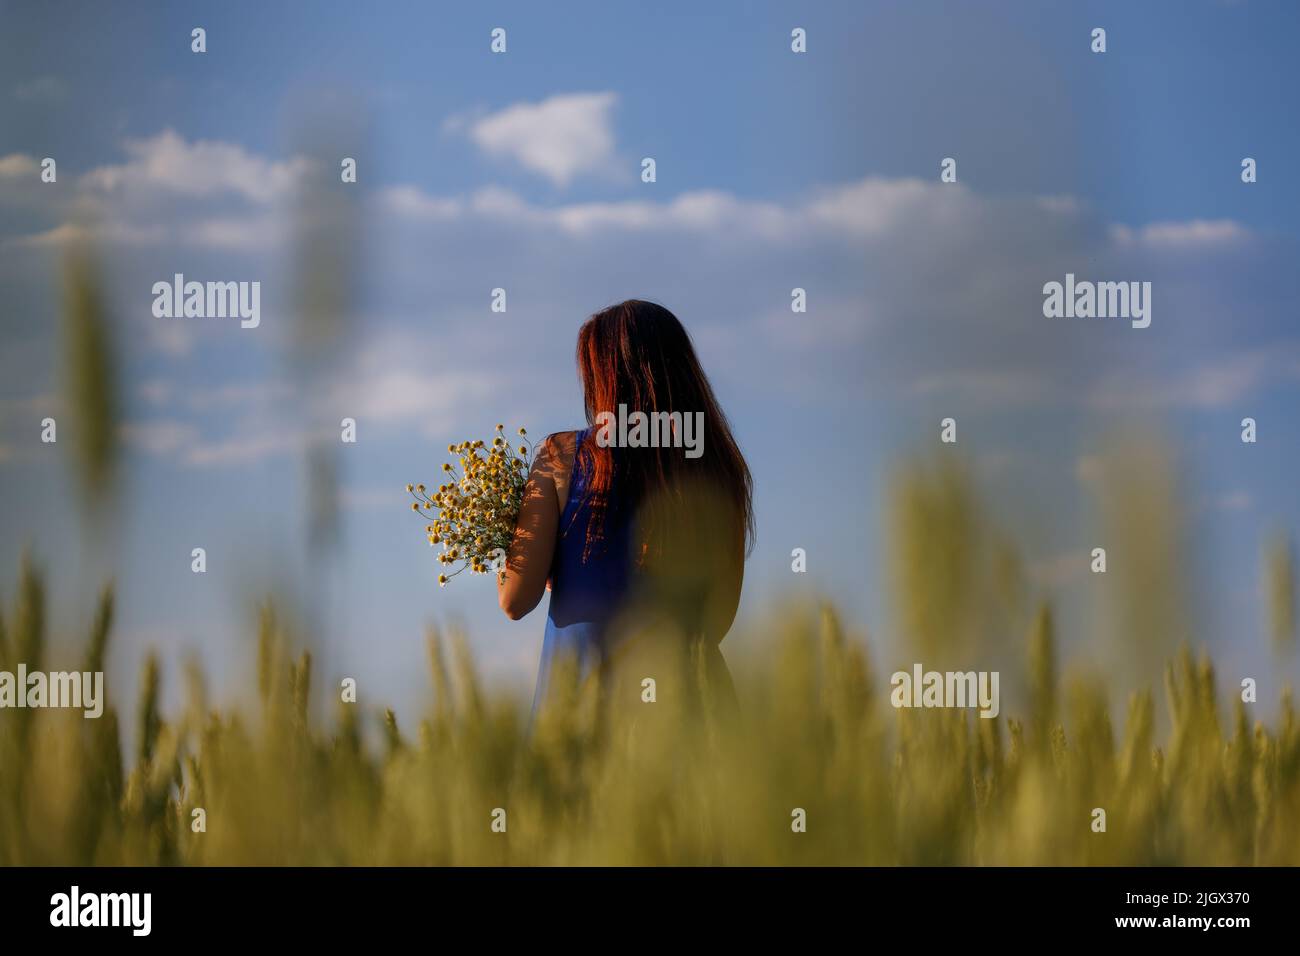 Frauen in einem Getreidefeld mit einem Blumenstrauß aus Kamillenkräutern. Zusammensetzung im Zusammenhang mit öcoligischen Produkten. Stockfoto